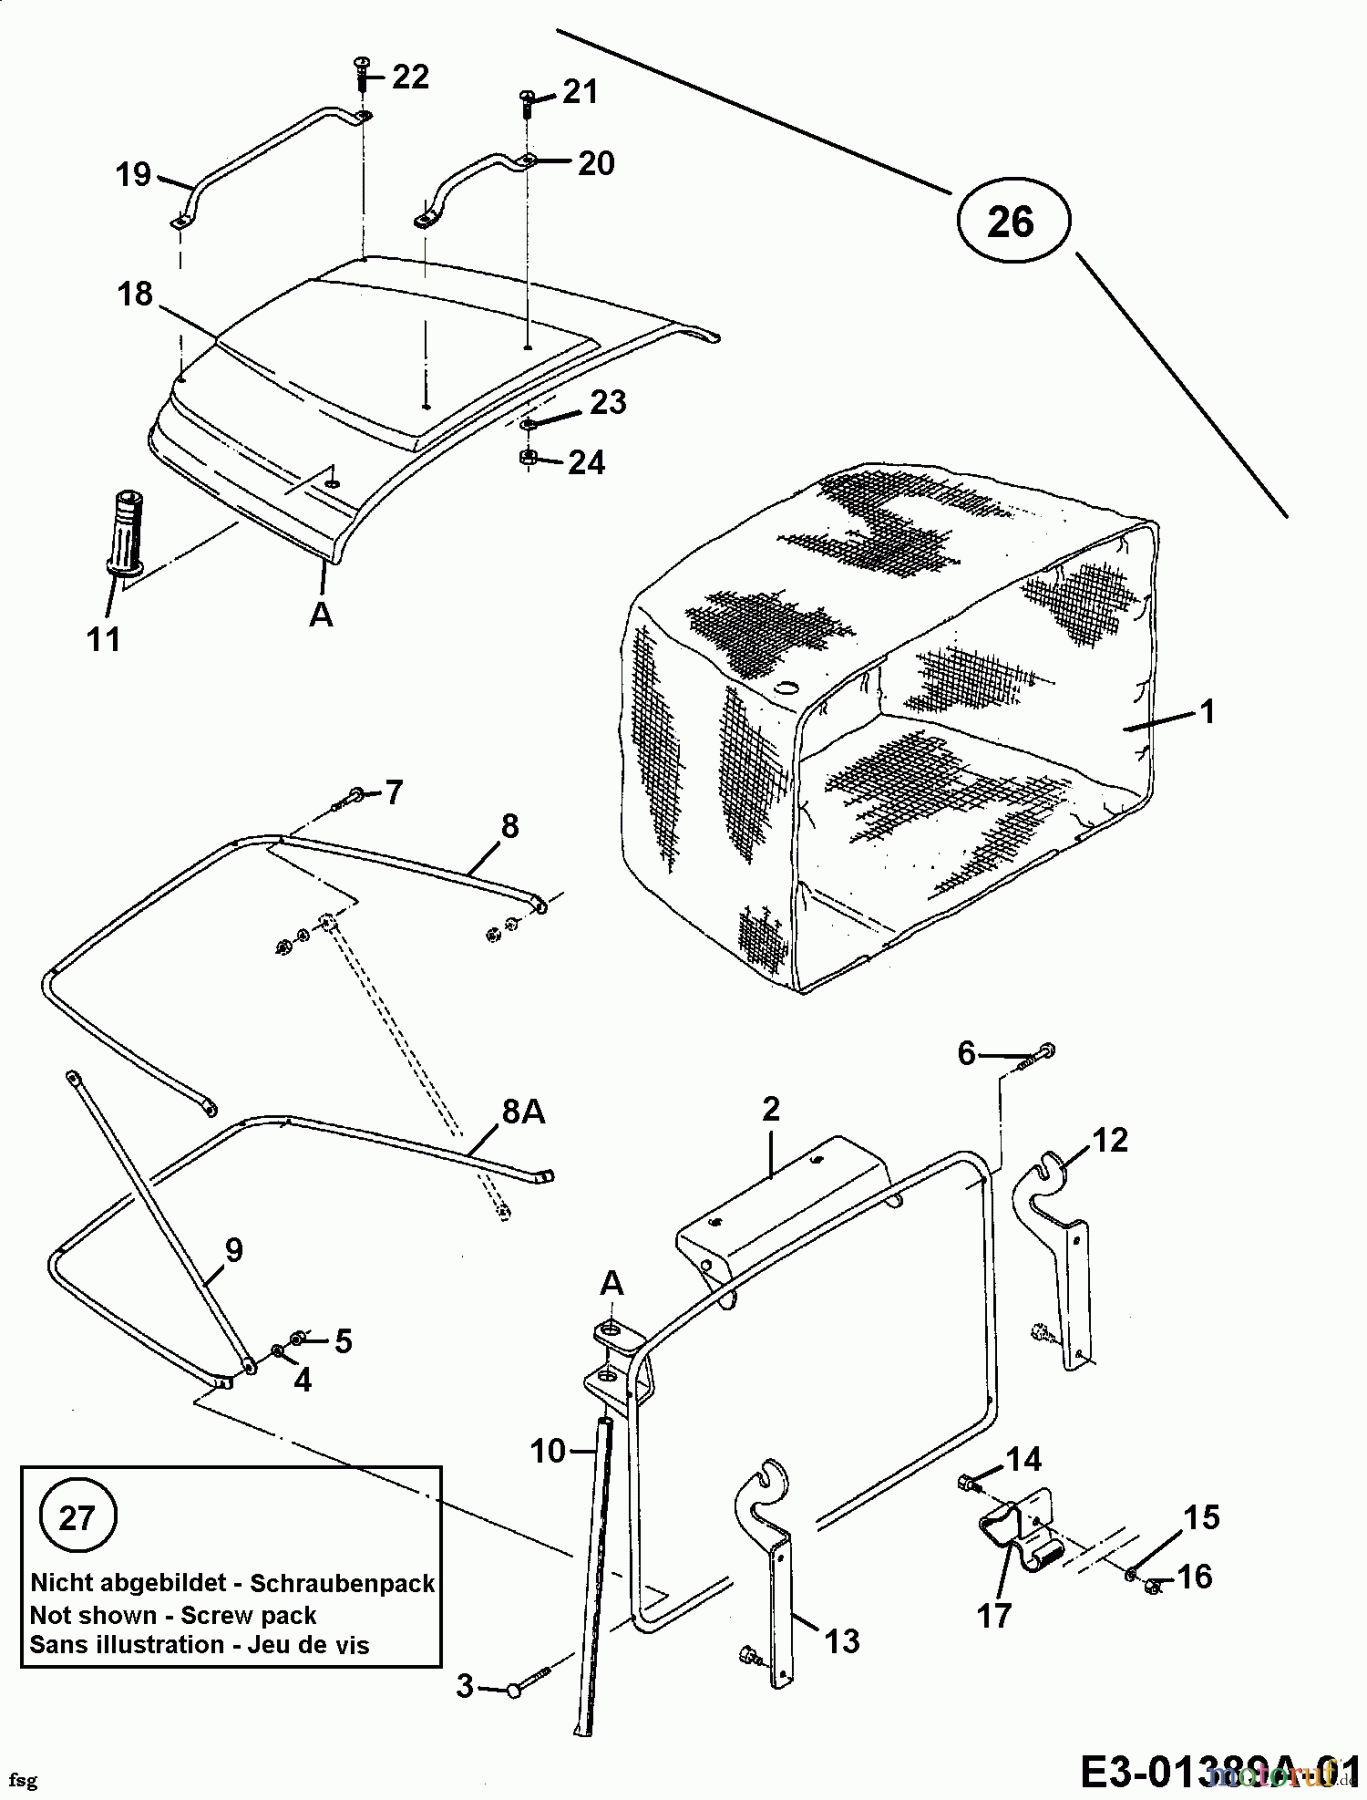  Juwel Rasentraktoren LRH 130 13AN473A618  (1997) Grasfangeinrichtung